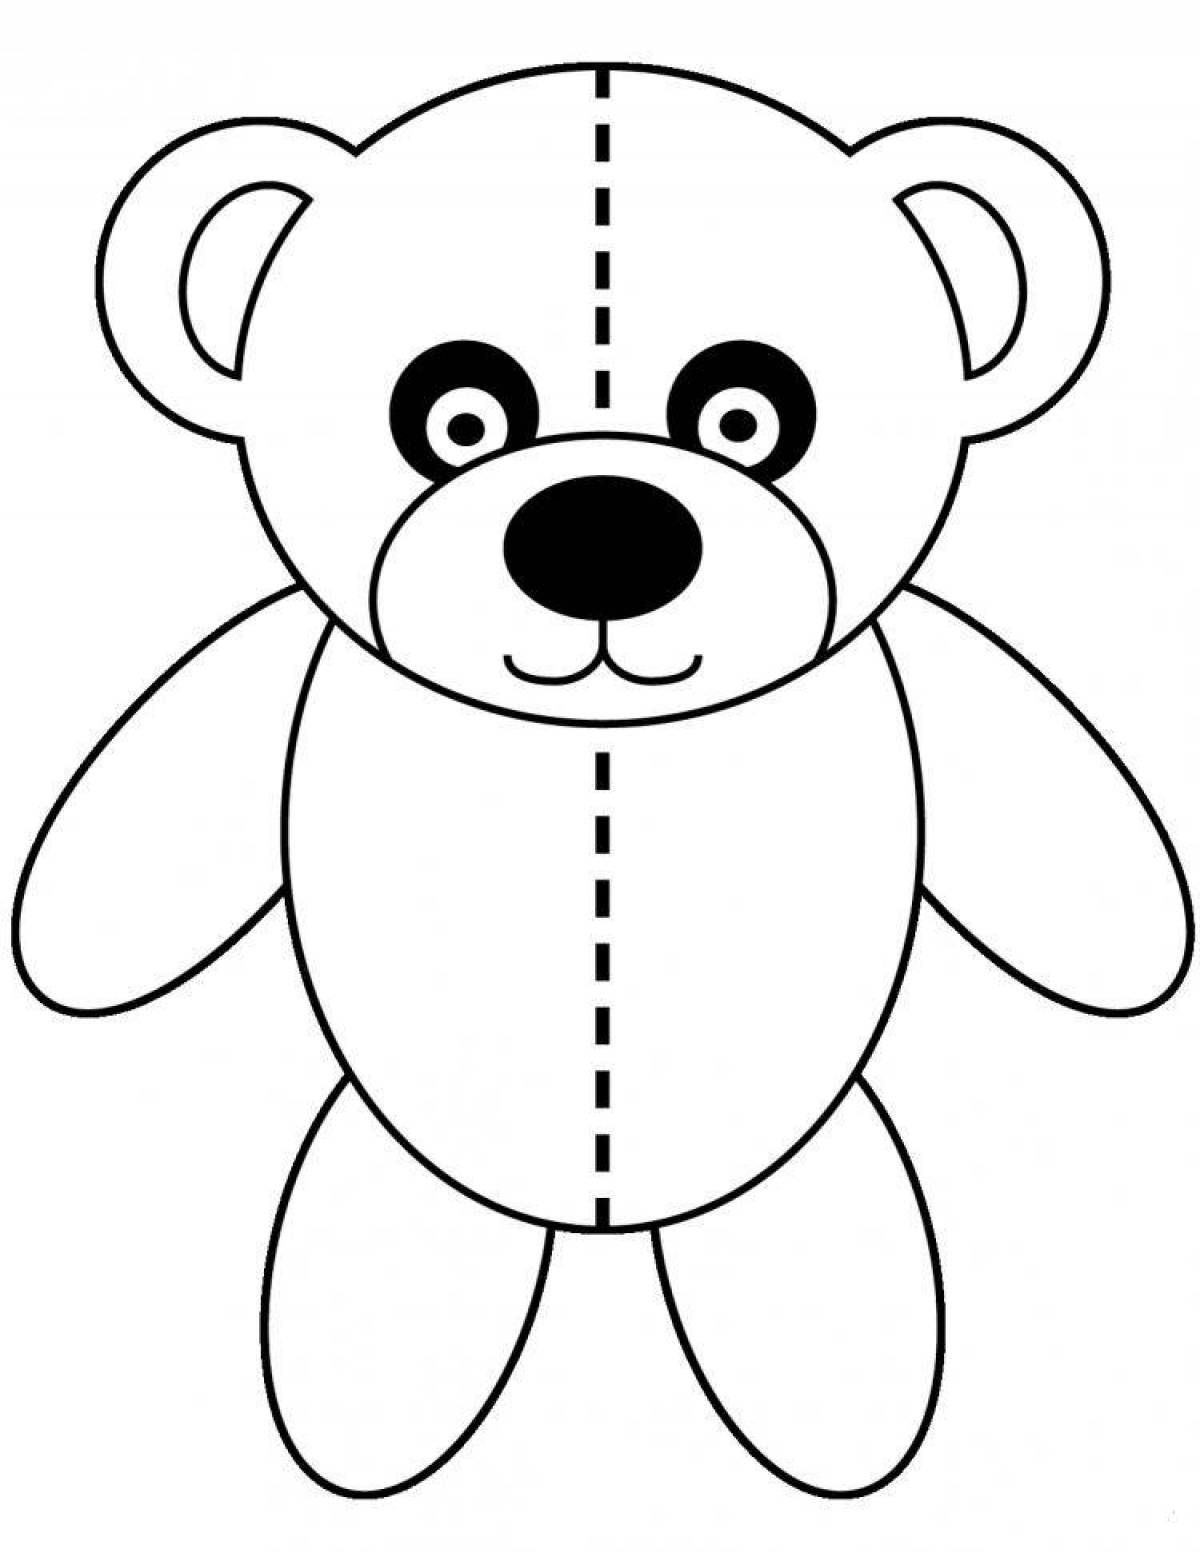 Причудливая раскраска медведя для детей